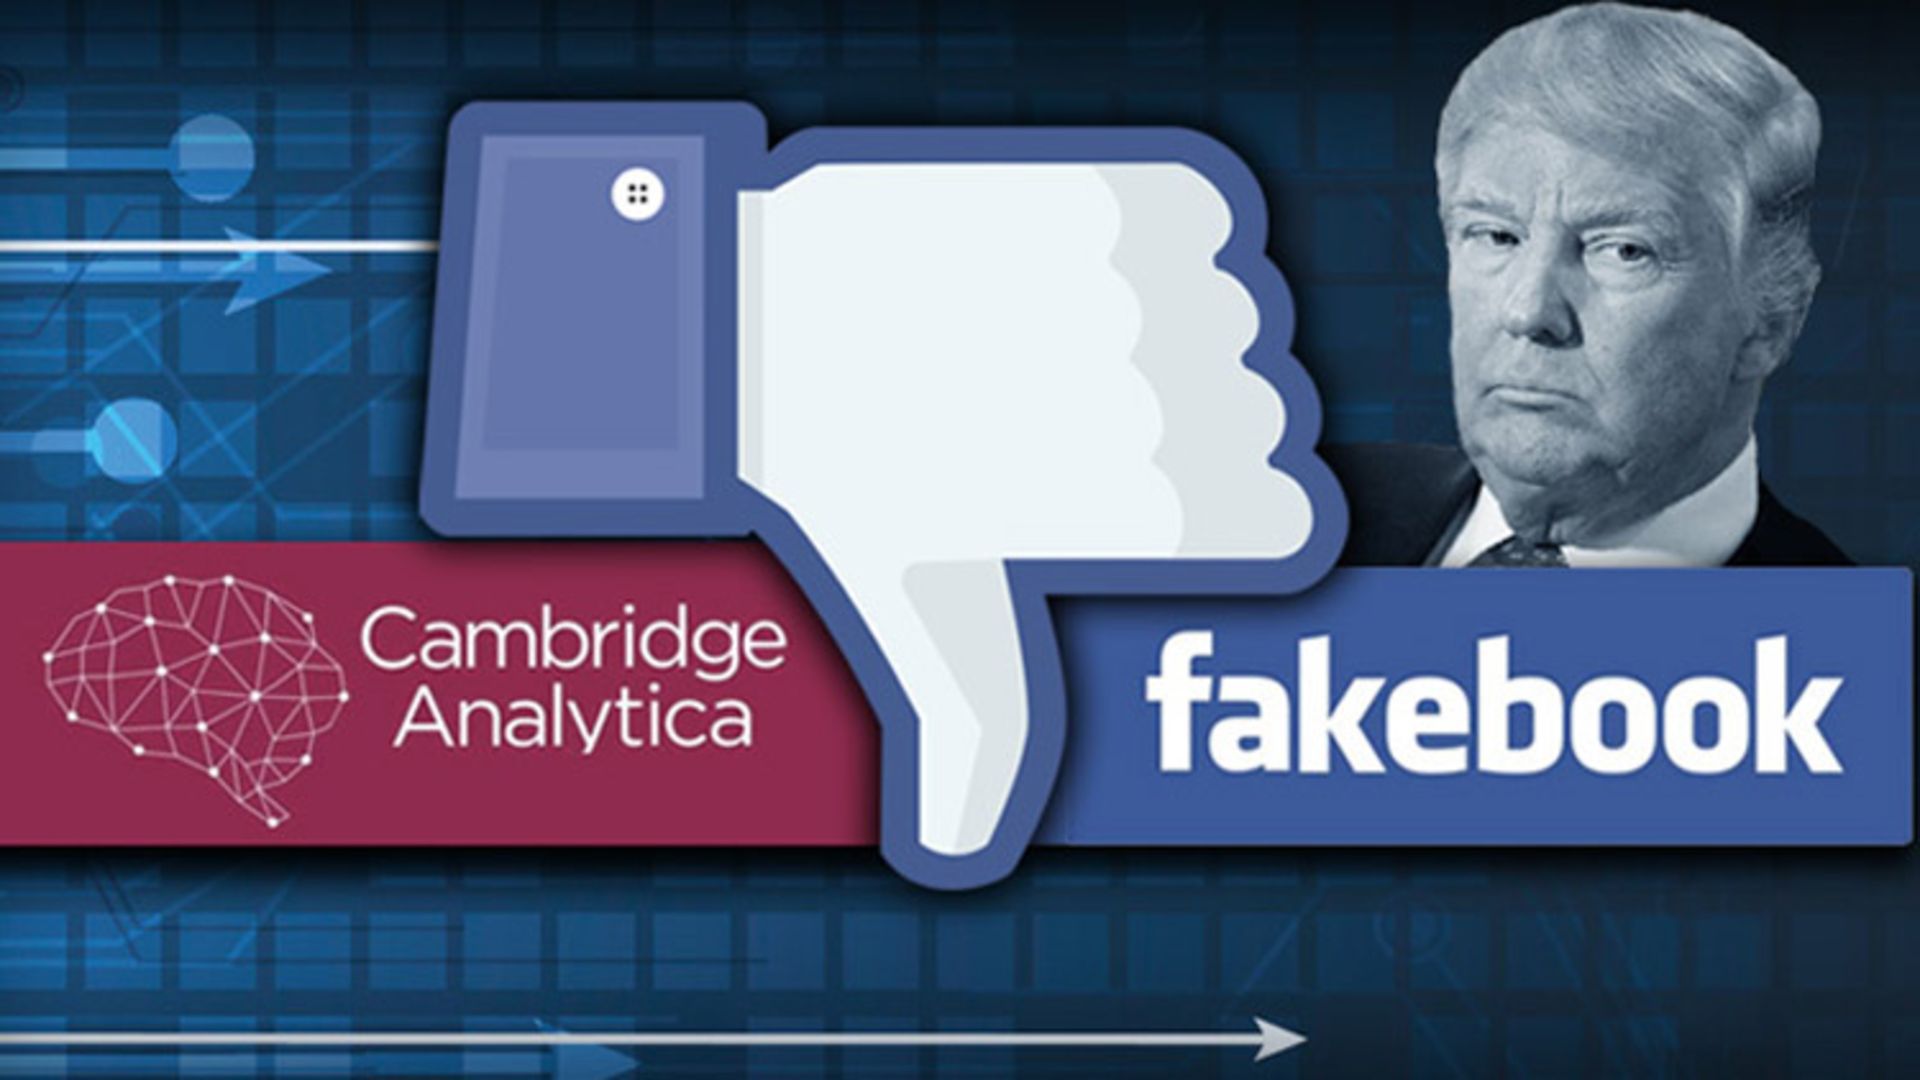 فیسبوک و کمبریج آنالیتیکا / Facebook and Cambridge Analytica